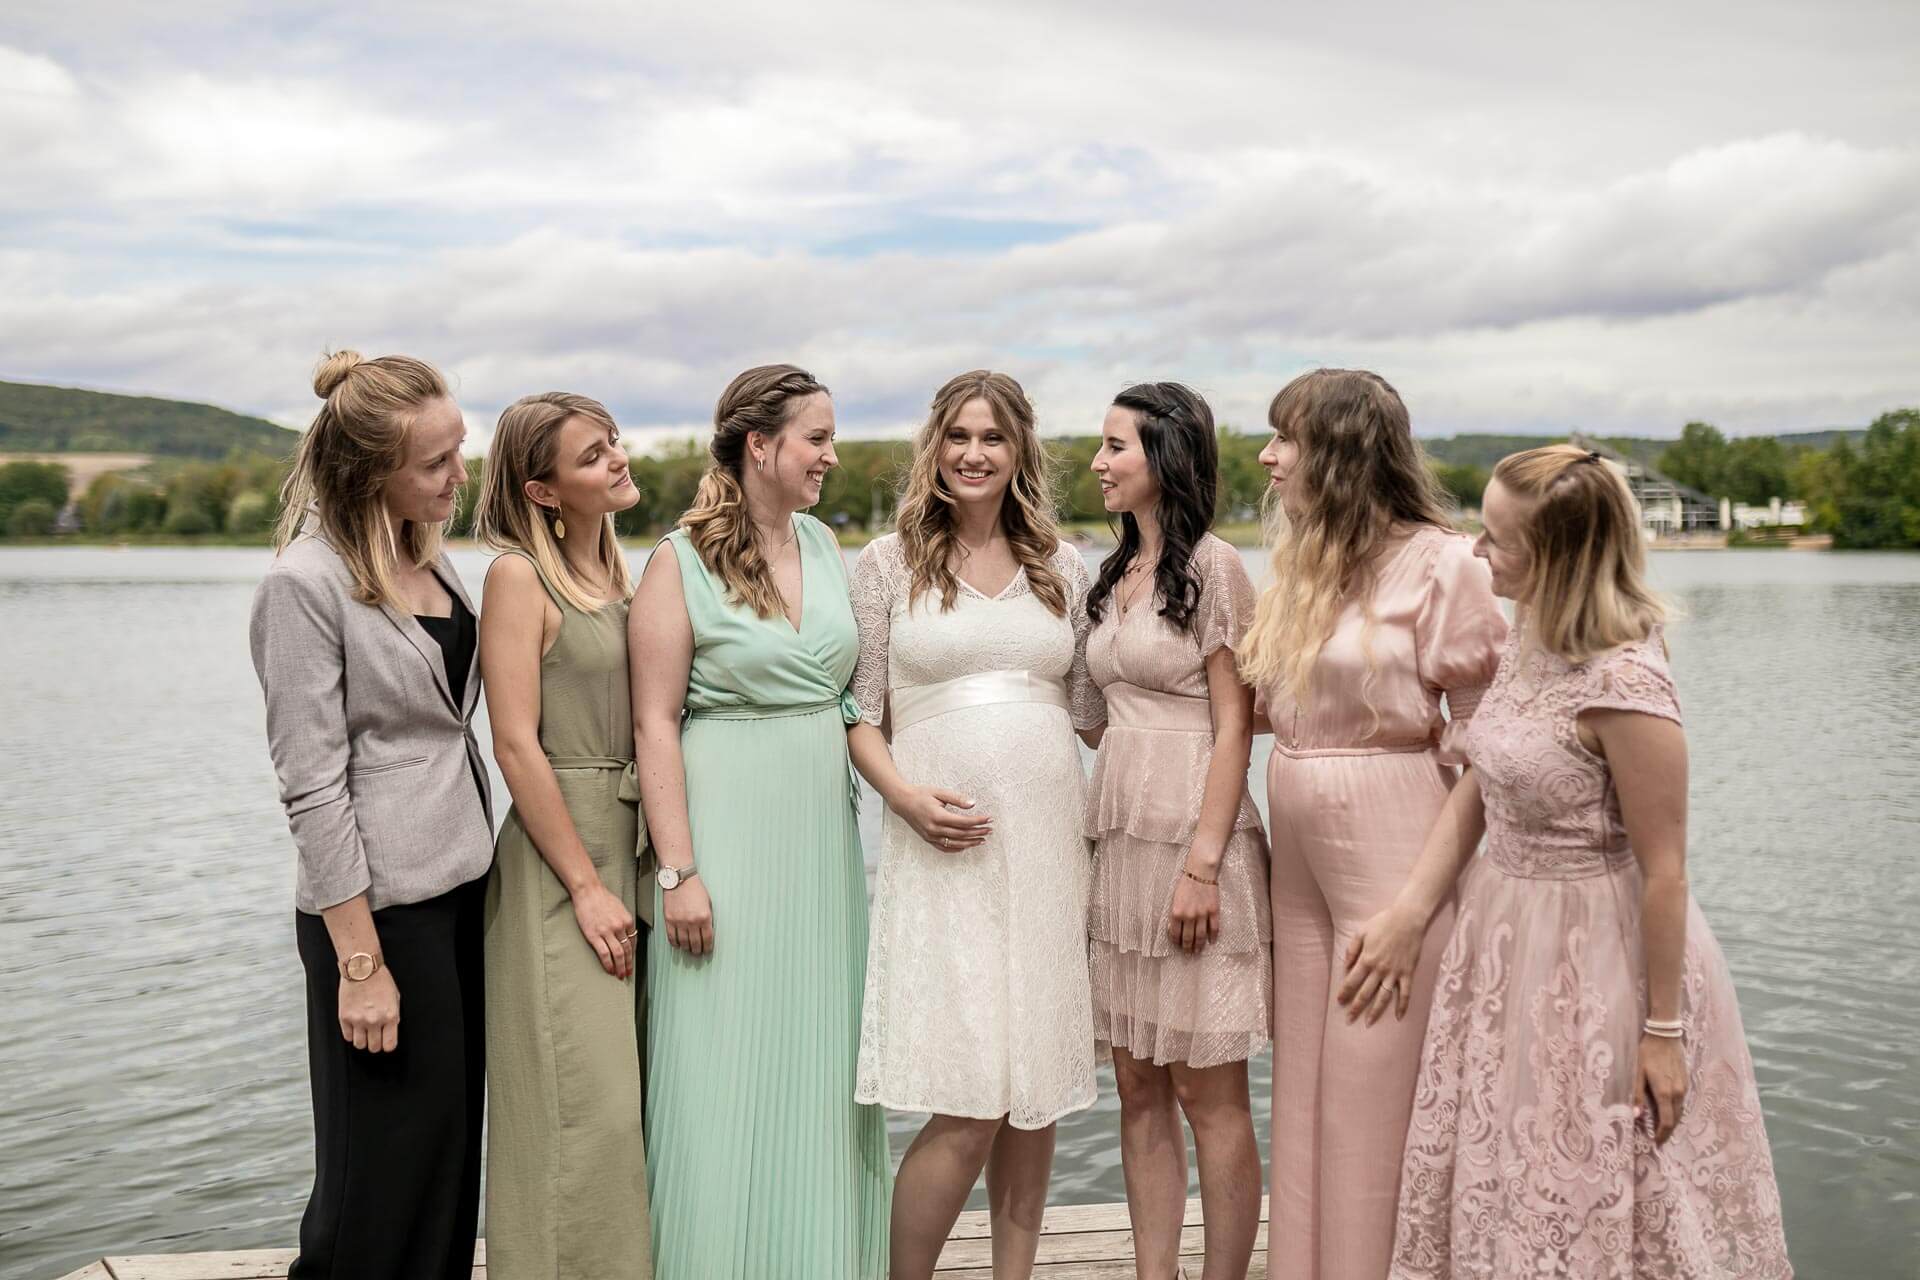 Gruppenfoto mit den Freundinnen der Braut und der Braut in der Mitte